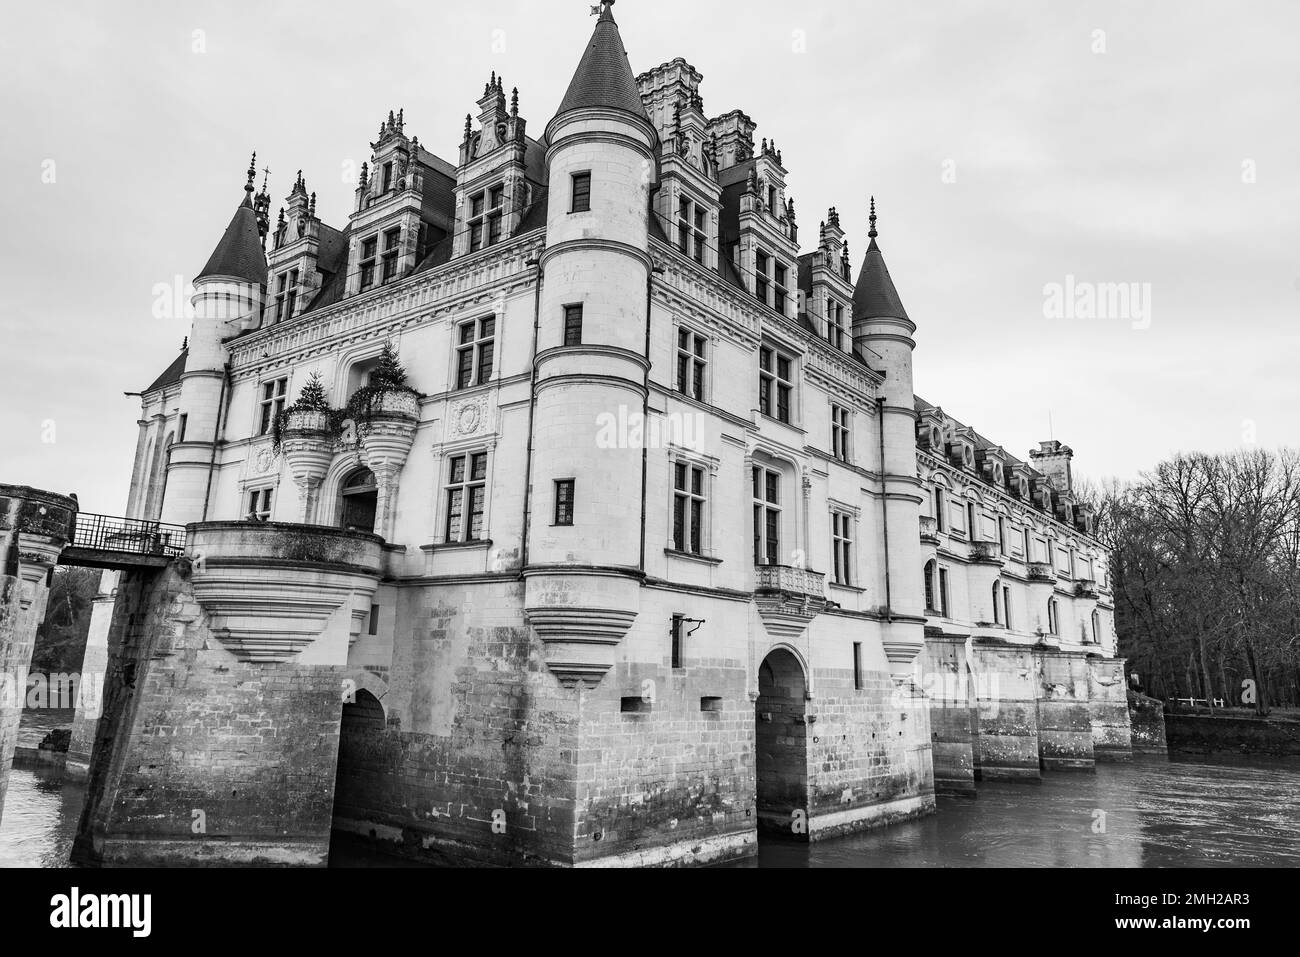 Chenonceau, France - Déc 29 2022： le beau jardin du château de Chenonceau en France Banque D'Images